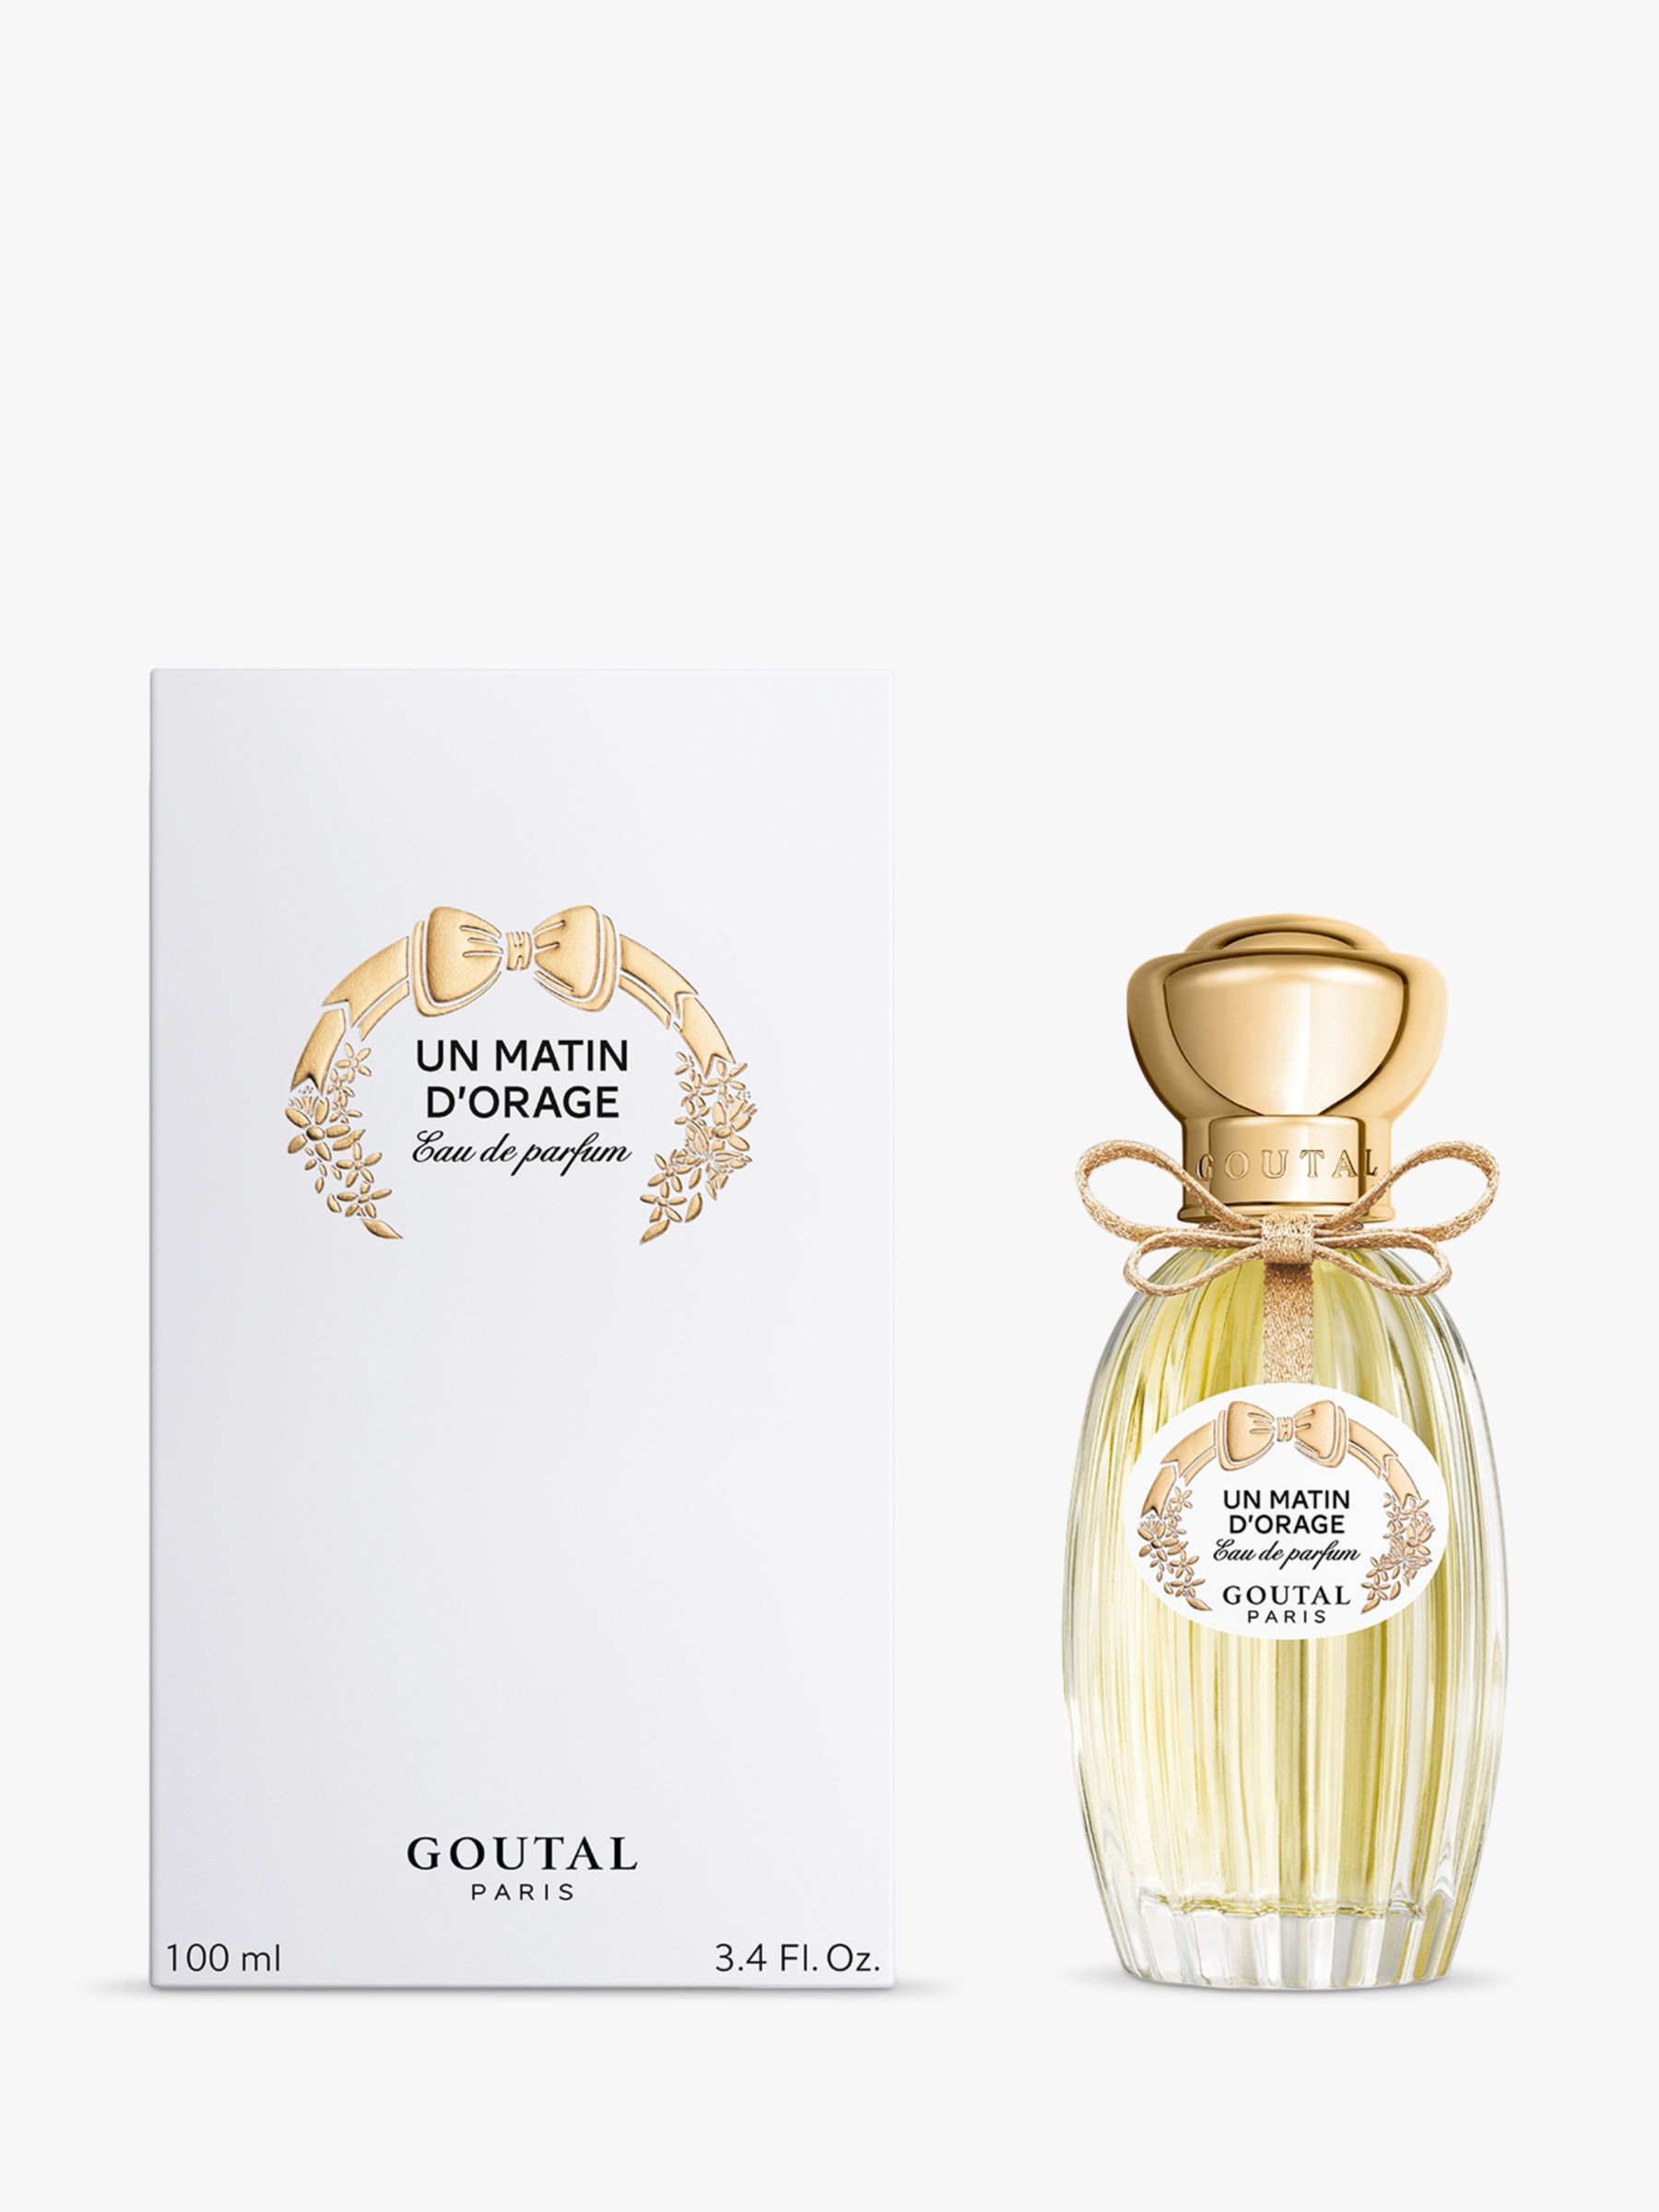 Goutal Un Matin d'Orage Eau de Parfum, 100ml at John Lewis & Partners